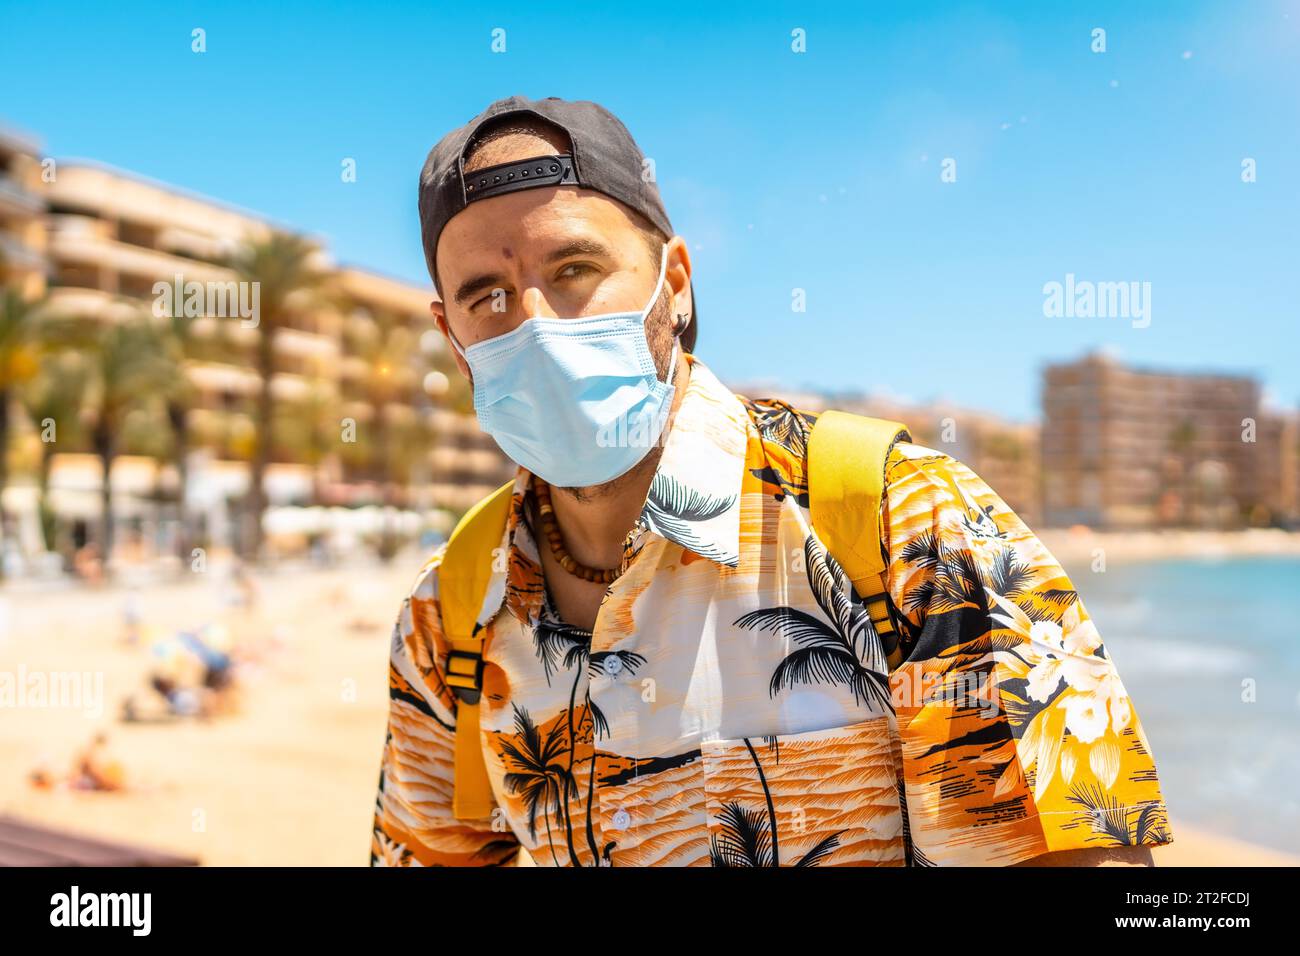 Ein junger Mann mit einer touristischen chirurgischen Maske am Strand von Cura in der Küstenstadt Torrevieja, Alicante, valencianische Gemeinschaft. Spanien, Mittelmeer Stockfoto